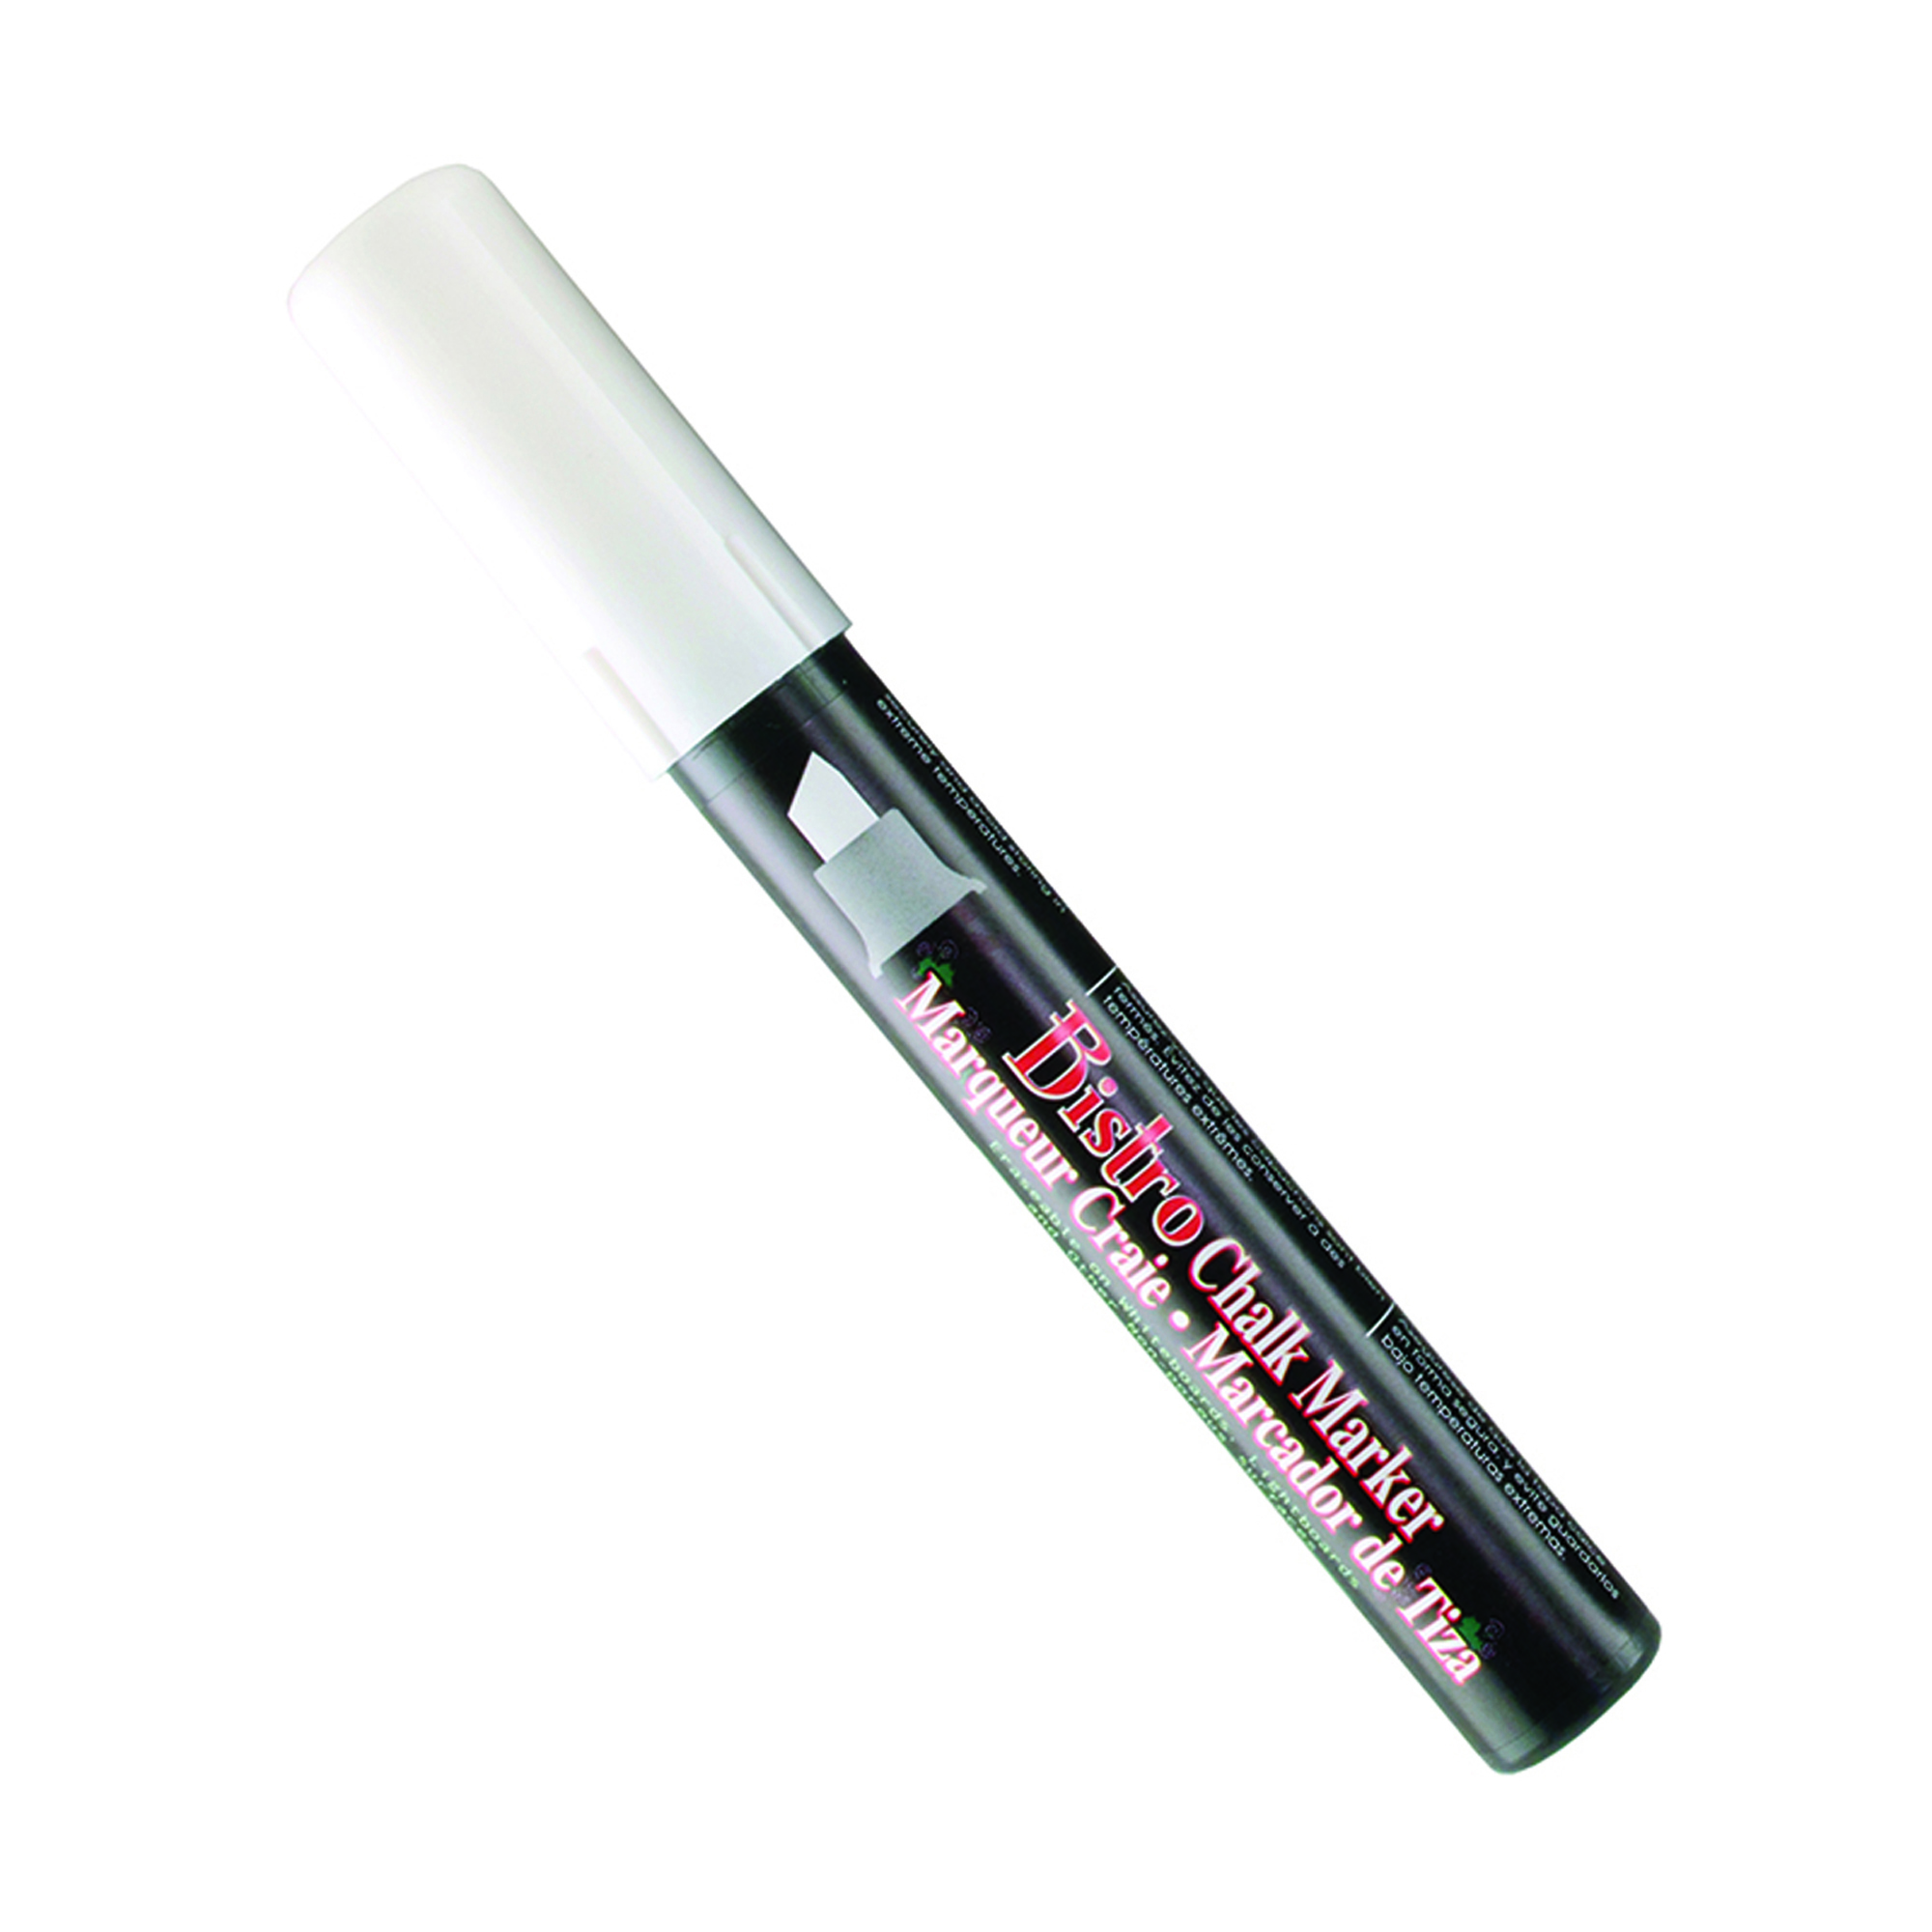 Chalk Brights Liquid Chalk Markers - TCR20884